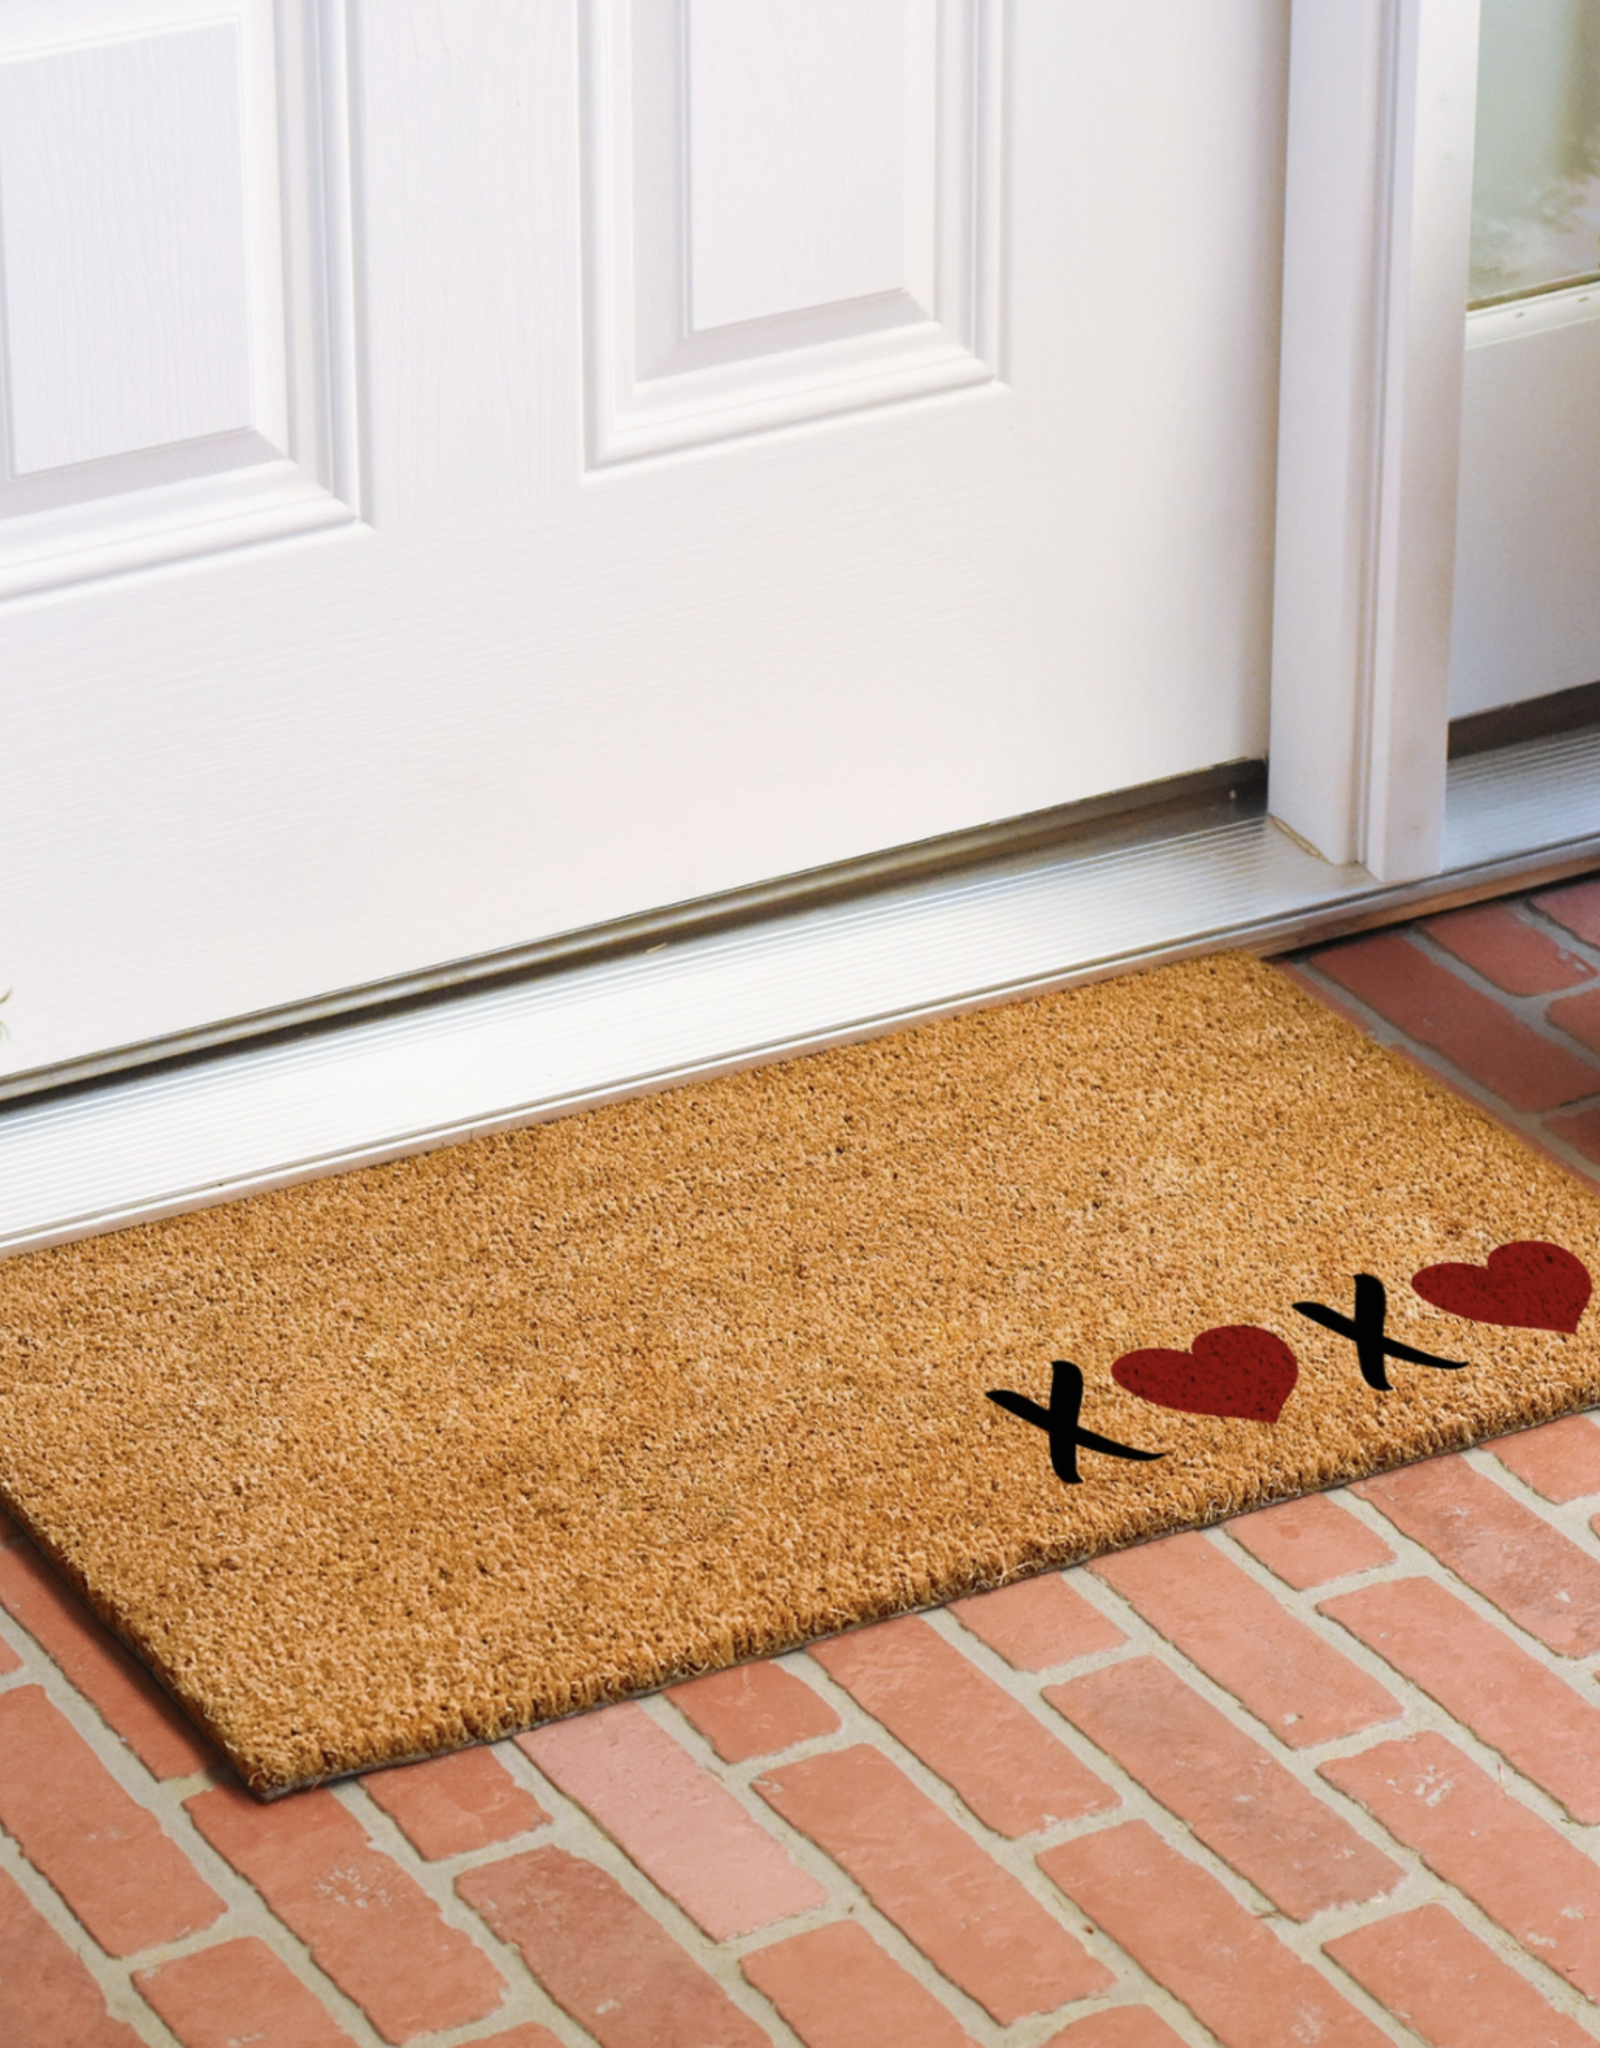 XOXO Doormat 24" x 36"